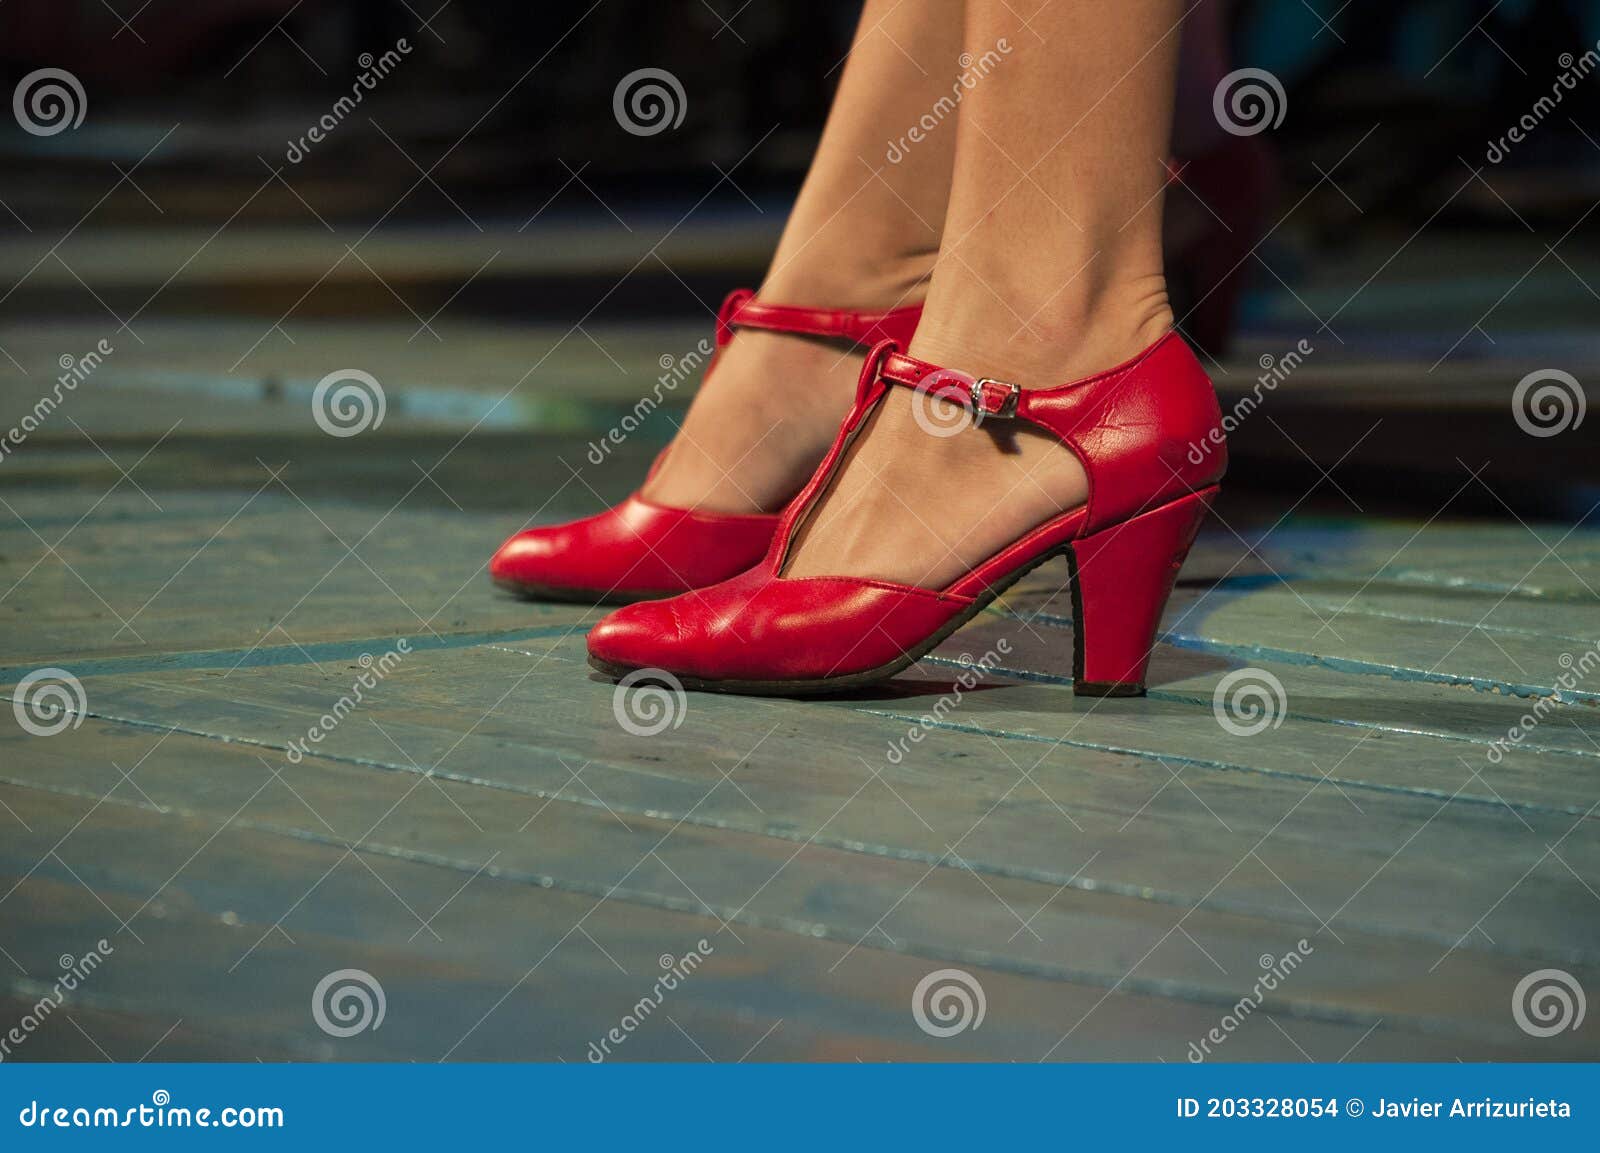 Acercamiento De Unas Zapatillas De Baile De Flamenco Rojo En Las Piernas De  Una Mujer En Un Escenario De Madera Foto de archivo - Imagen de glamour,  hermoso: 203328054